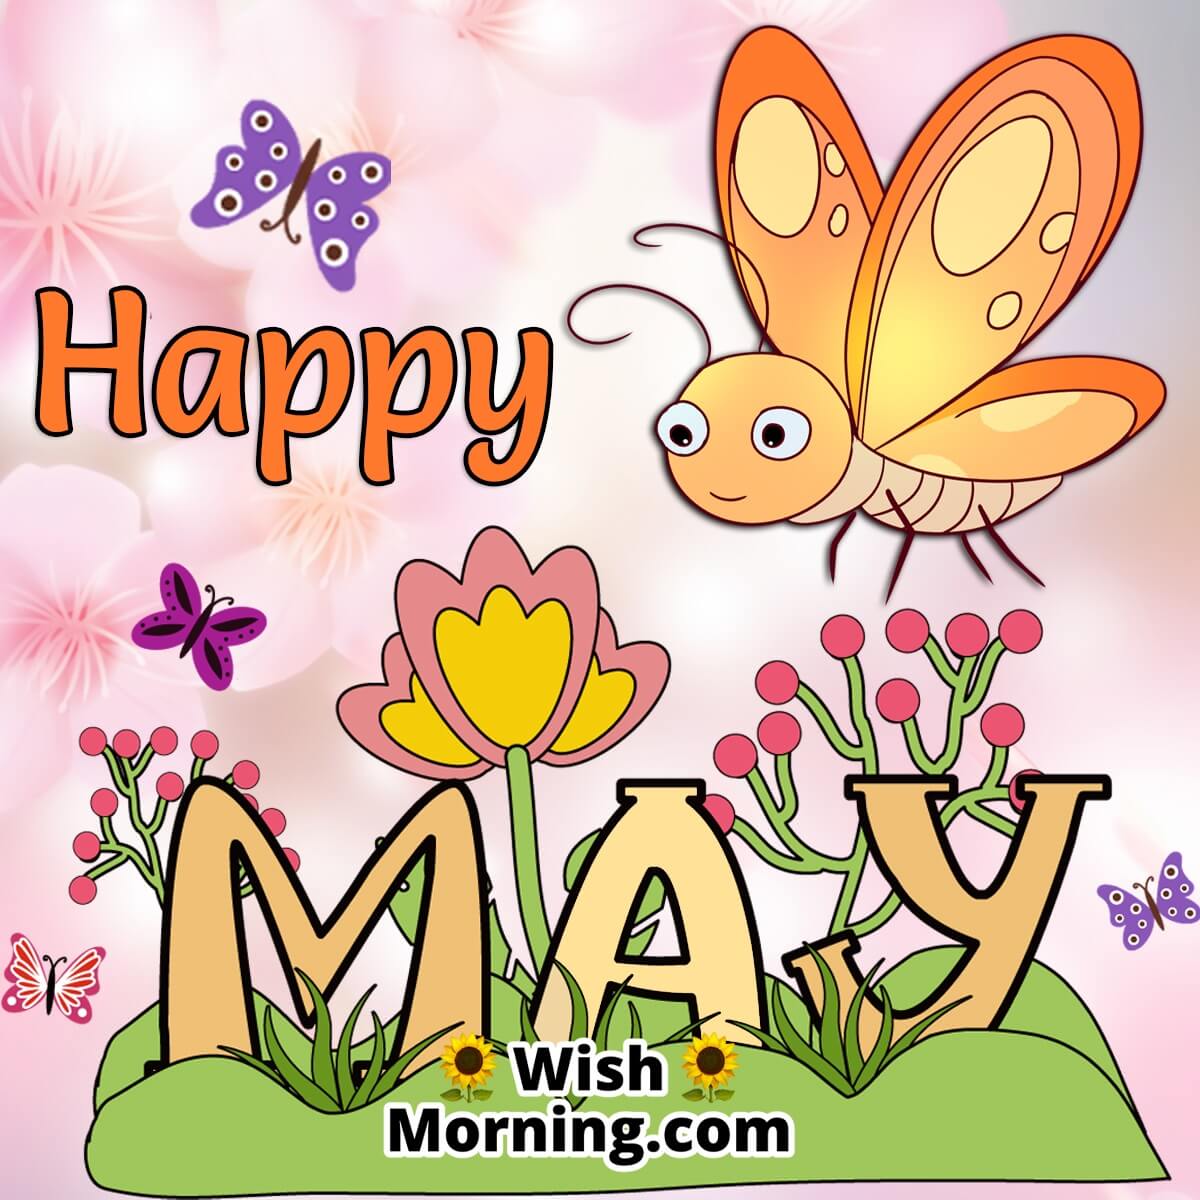 Happy May